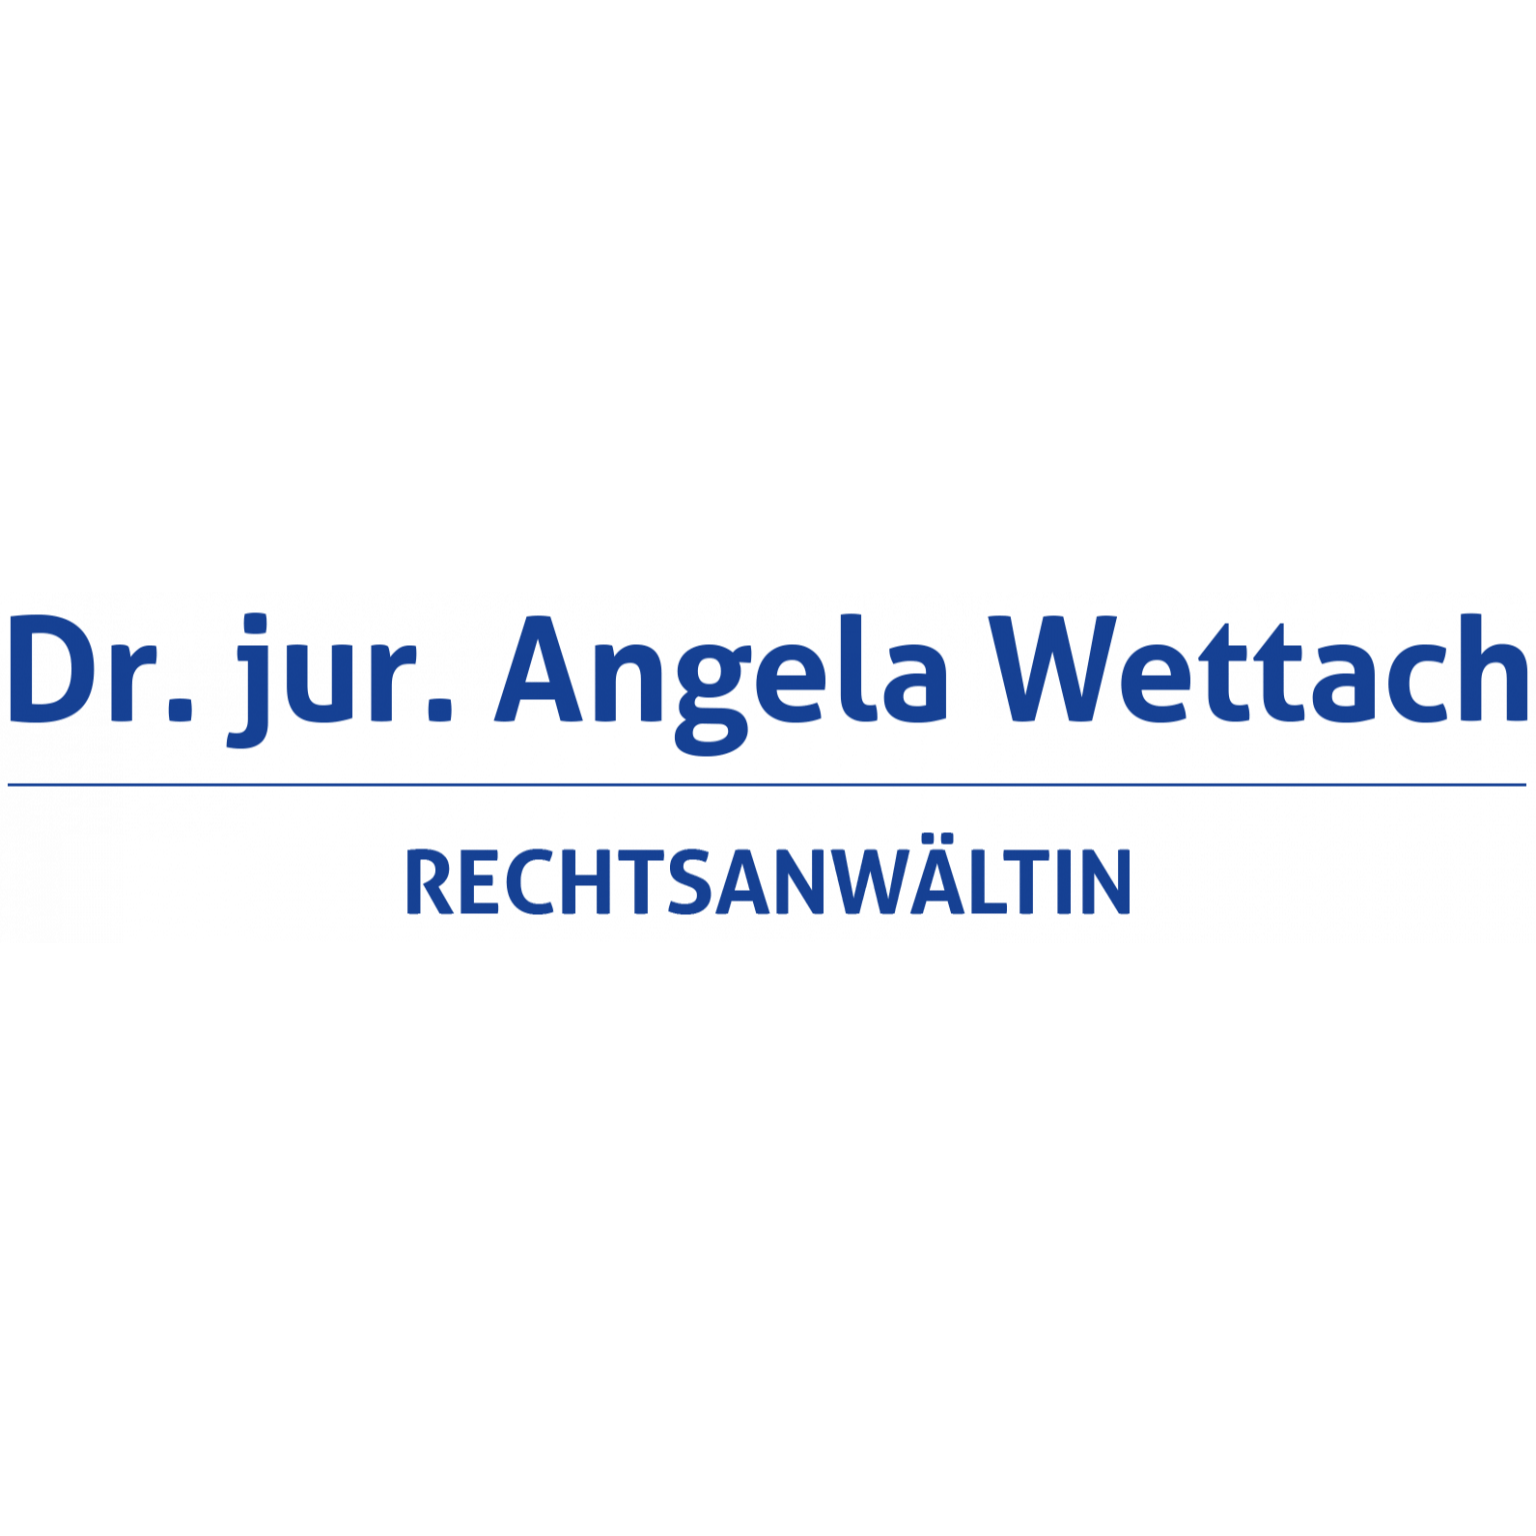 Angela Wettach Rechtsanwältin in Naumburg an der Saale - Logo